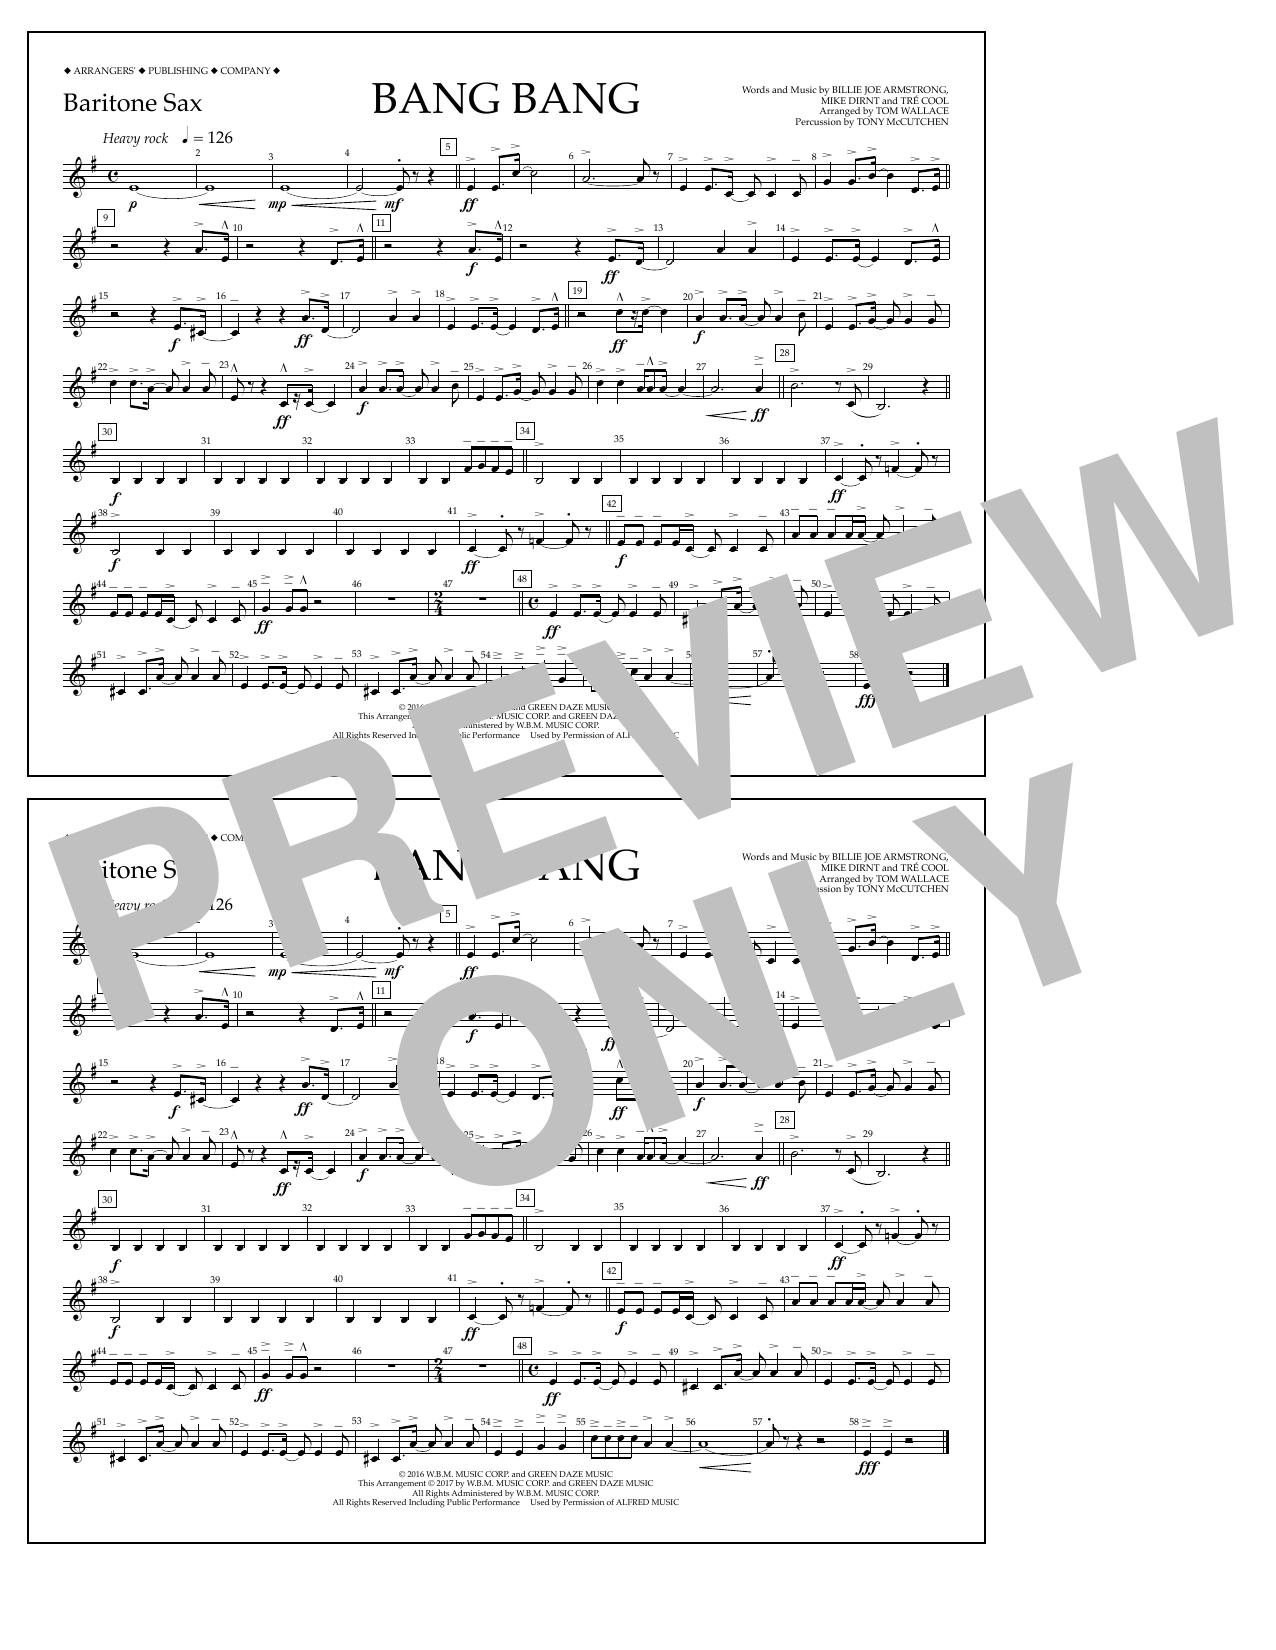 Tom Wallace Bang Bang - Baritone Sax Sheet Music Notes & Chords for Marching Band - Download or Print PDF